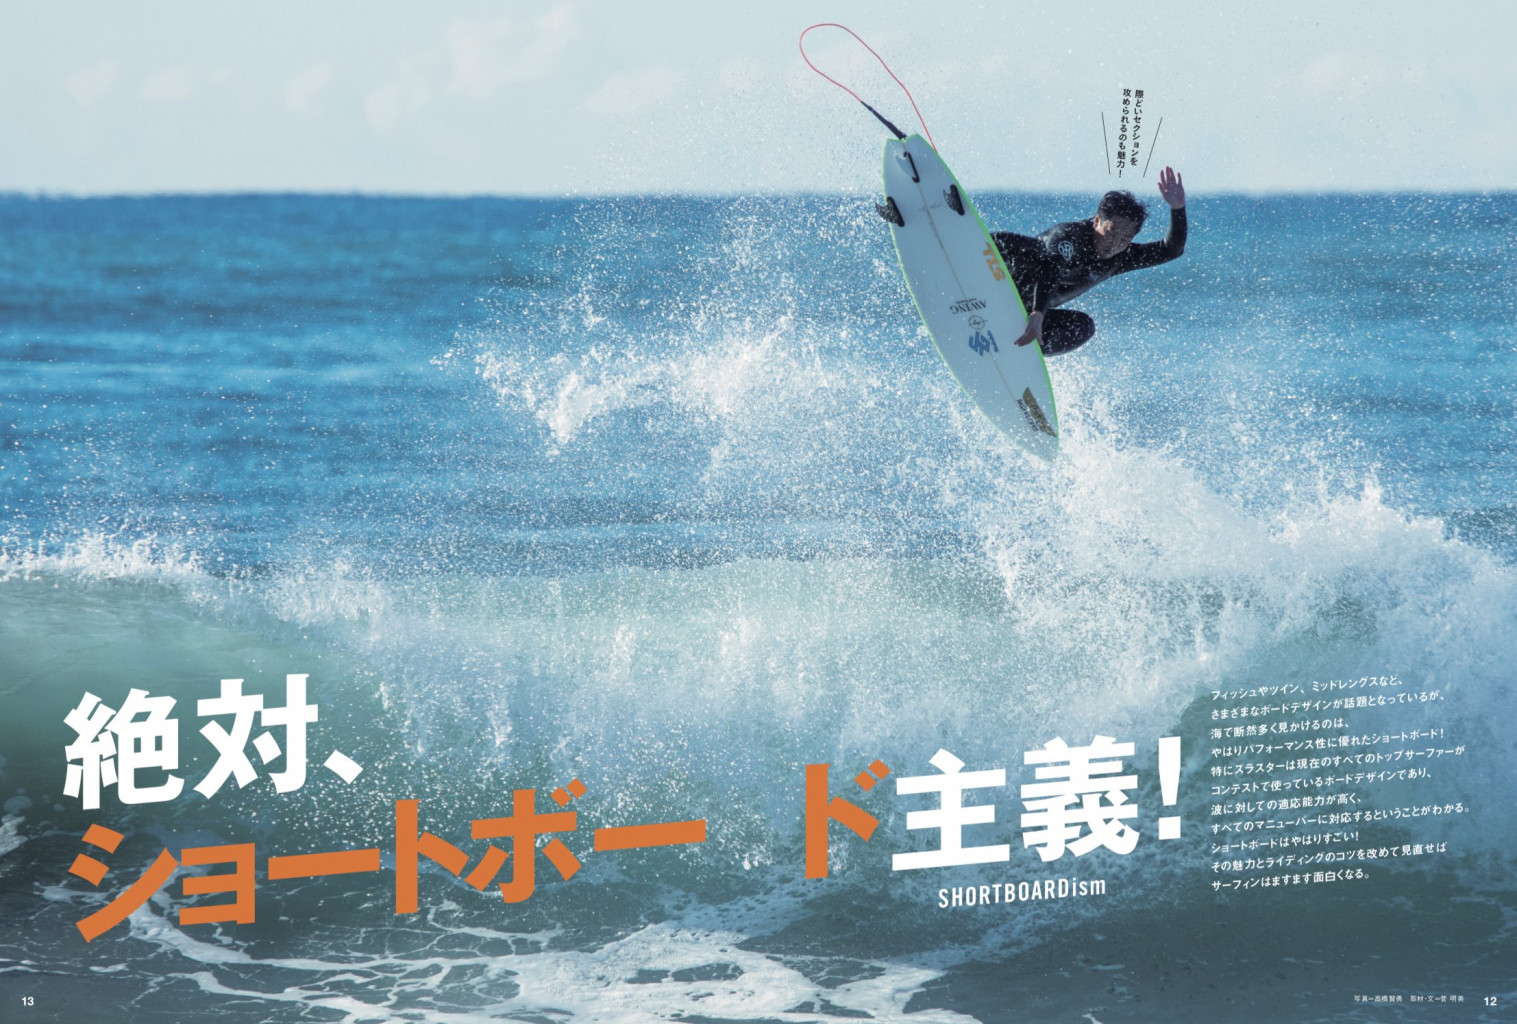 2月10日発売『SURFIN'LIFE』3月号「絶対ショートボード主義!」 | THE 